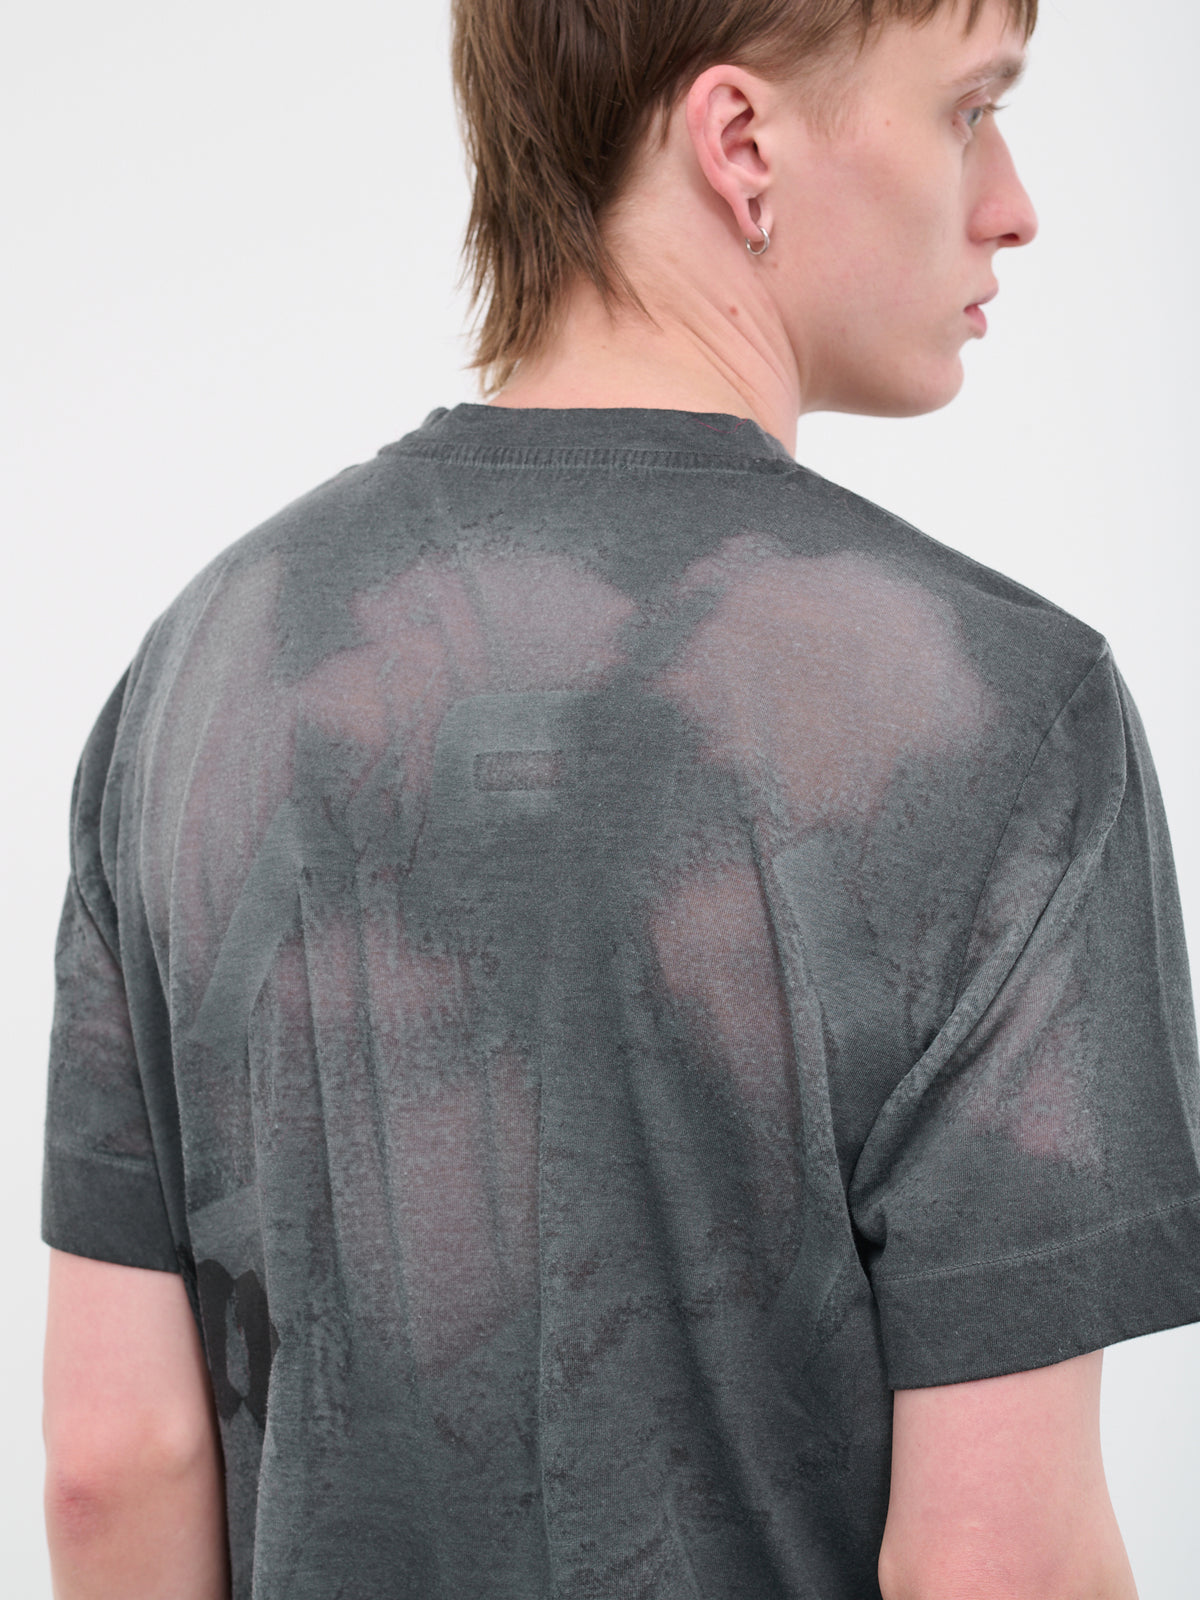 Translucent T-Shirt (AAUTS0391FA01-GREY)